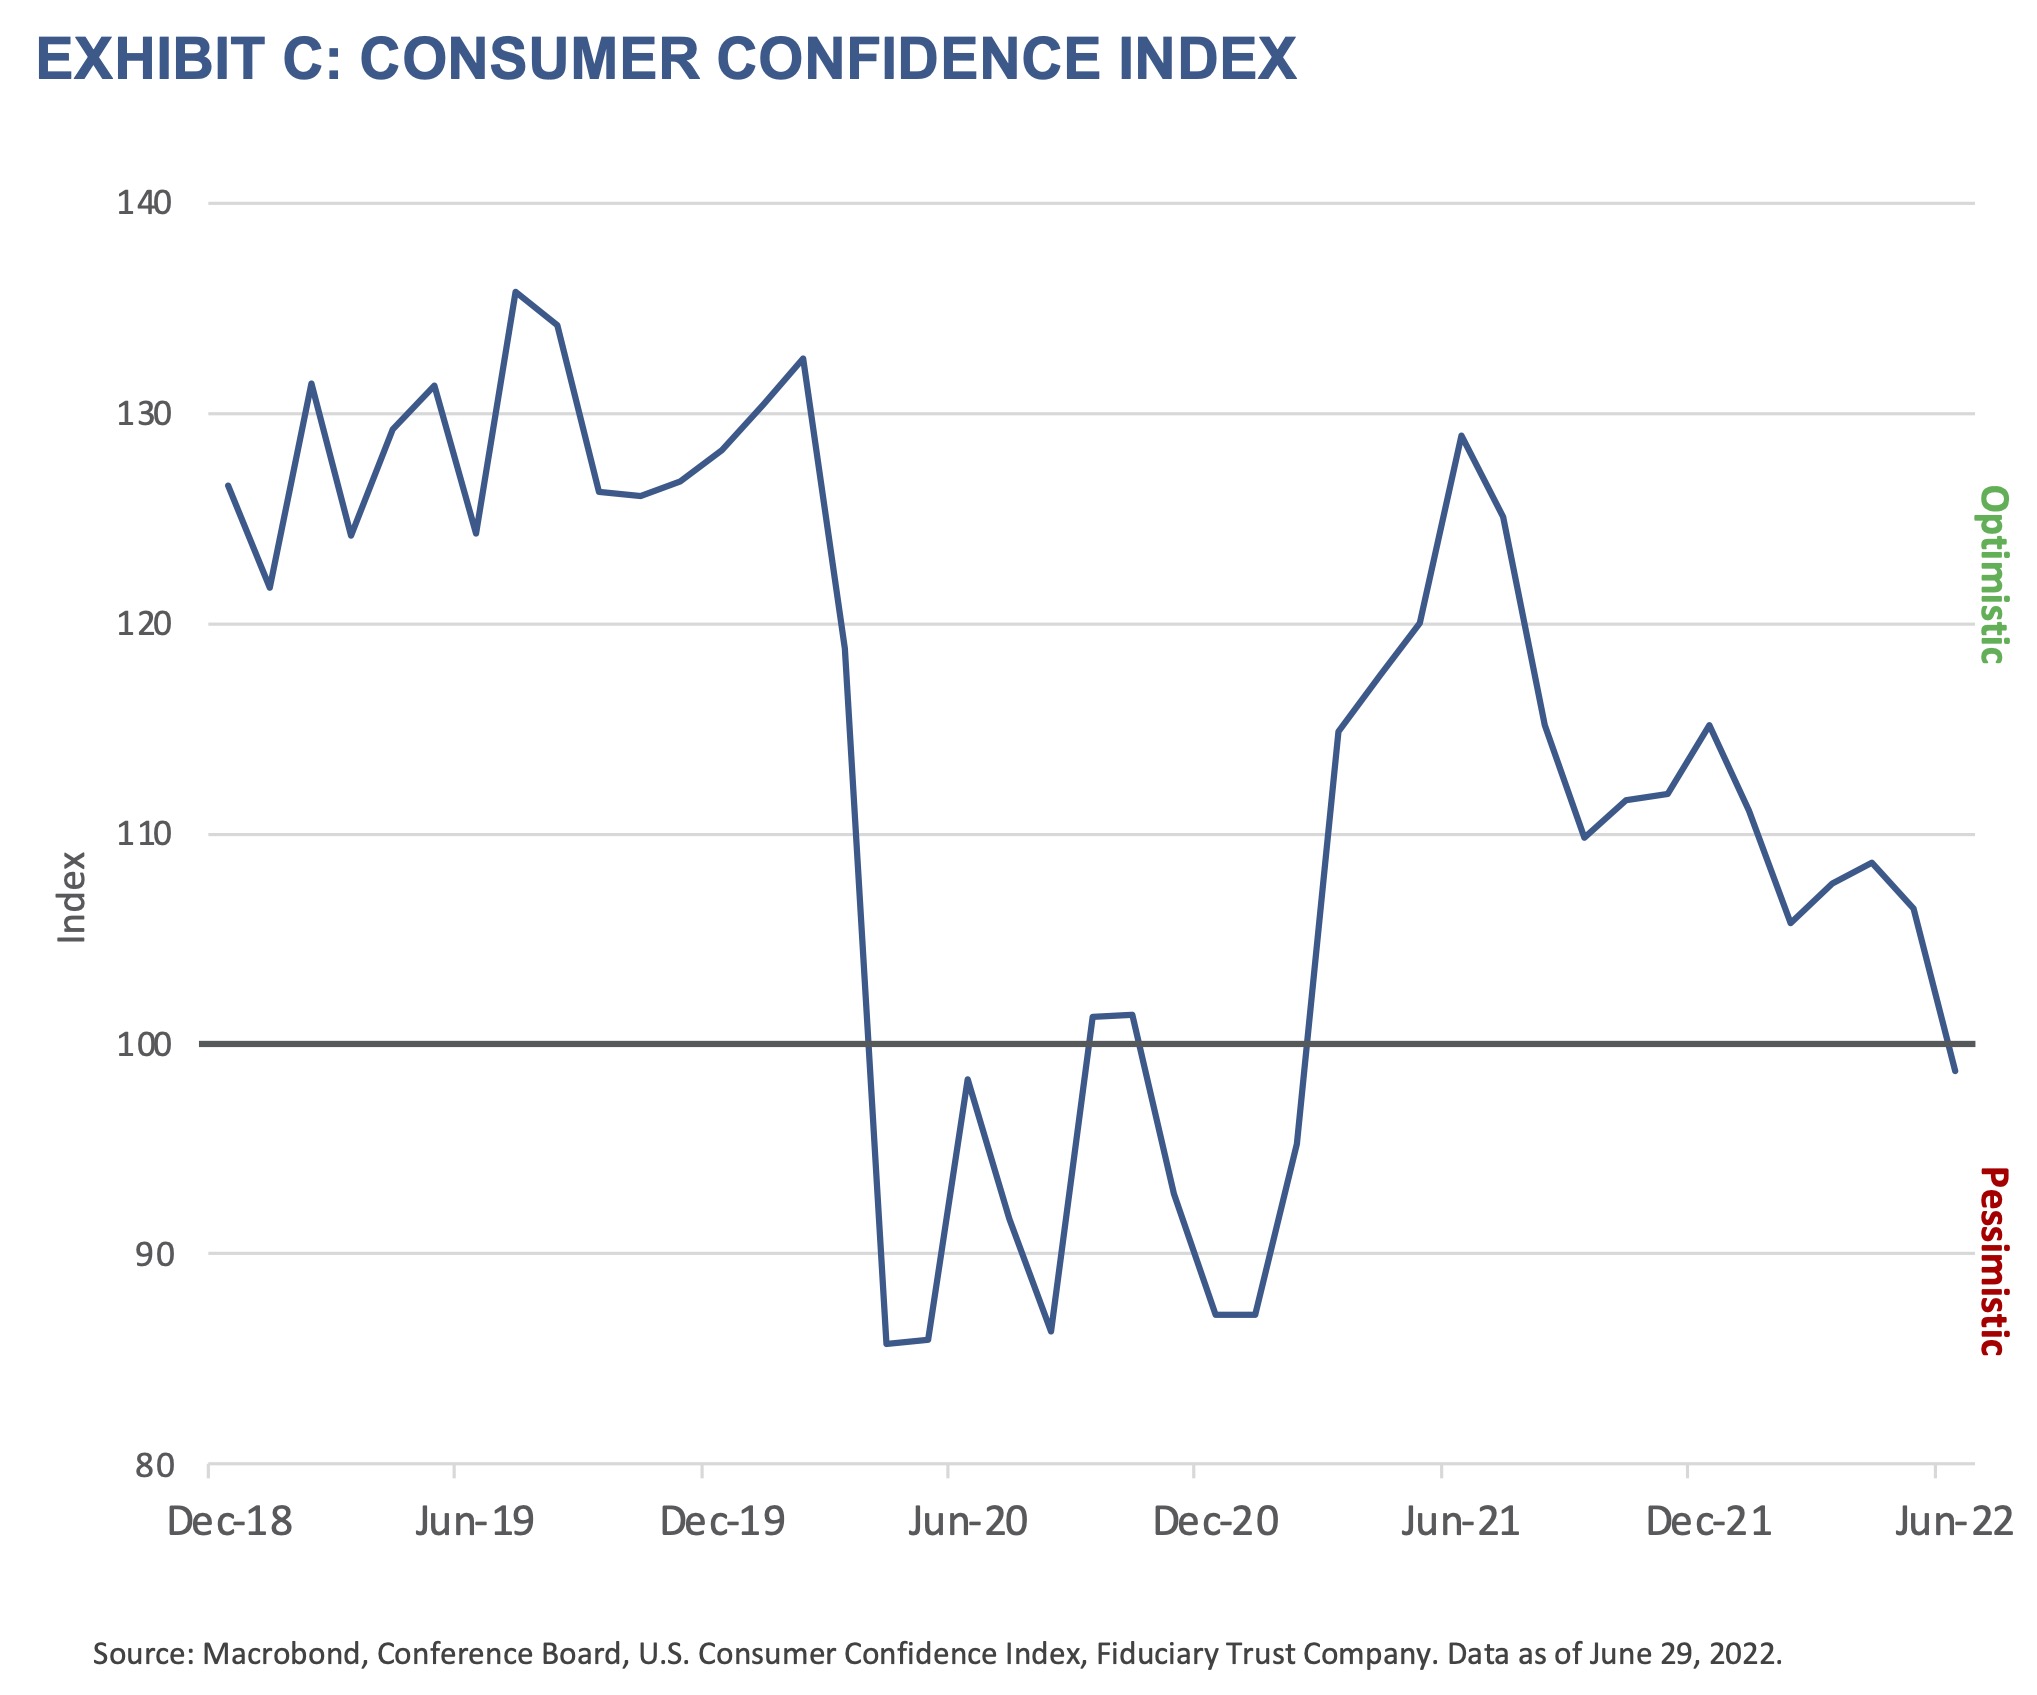 2022 Q3 Outlook - Exhibit C - Consumer Confidence Index